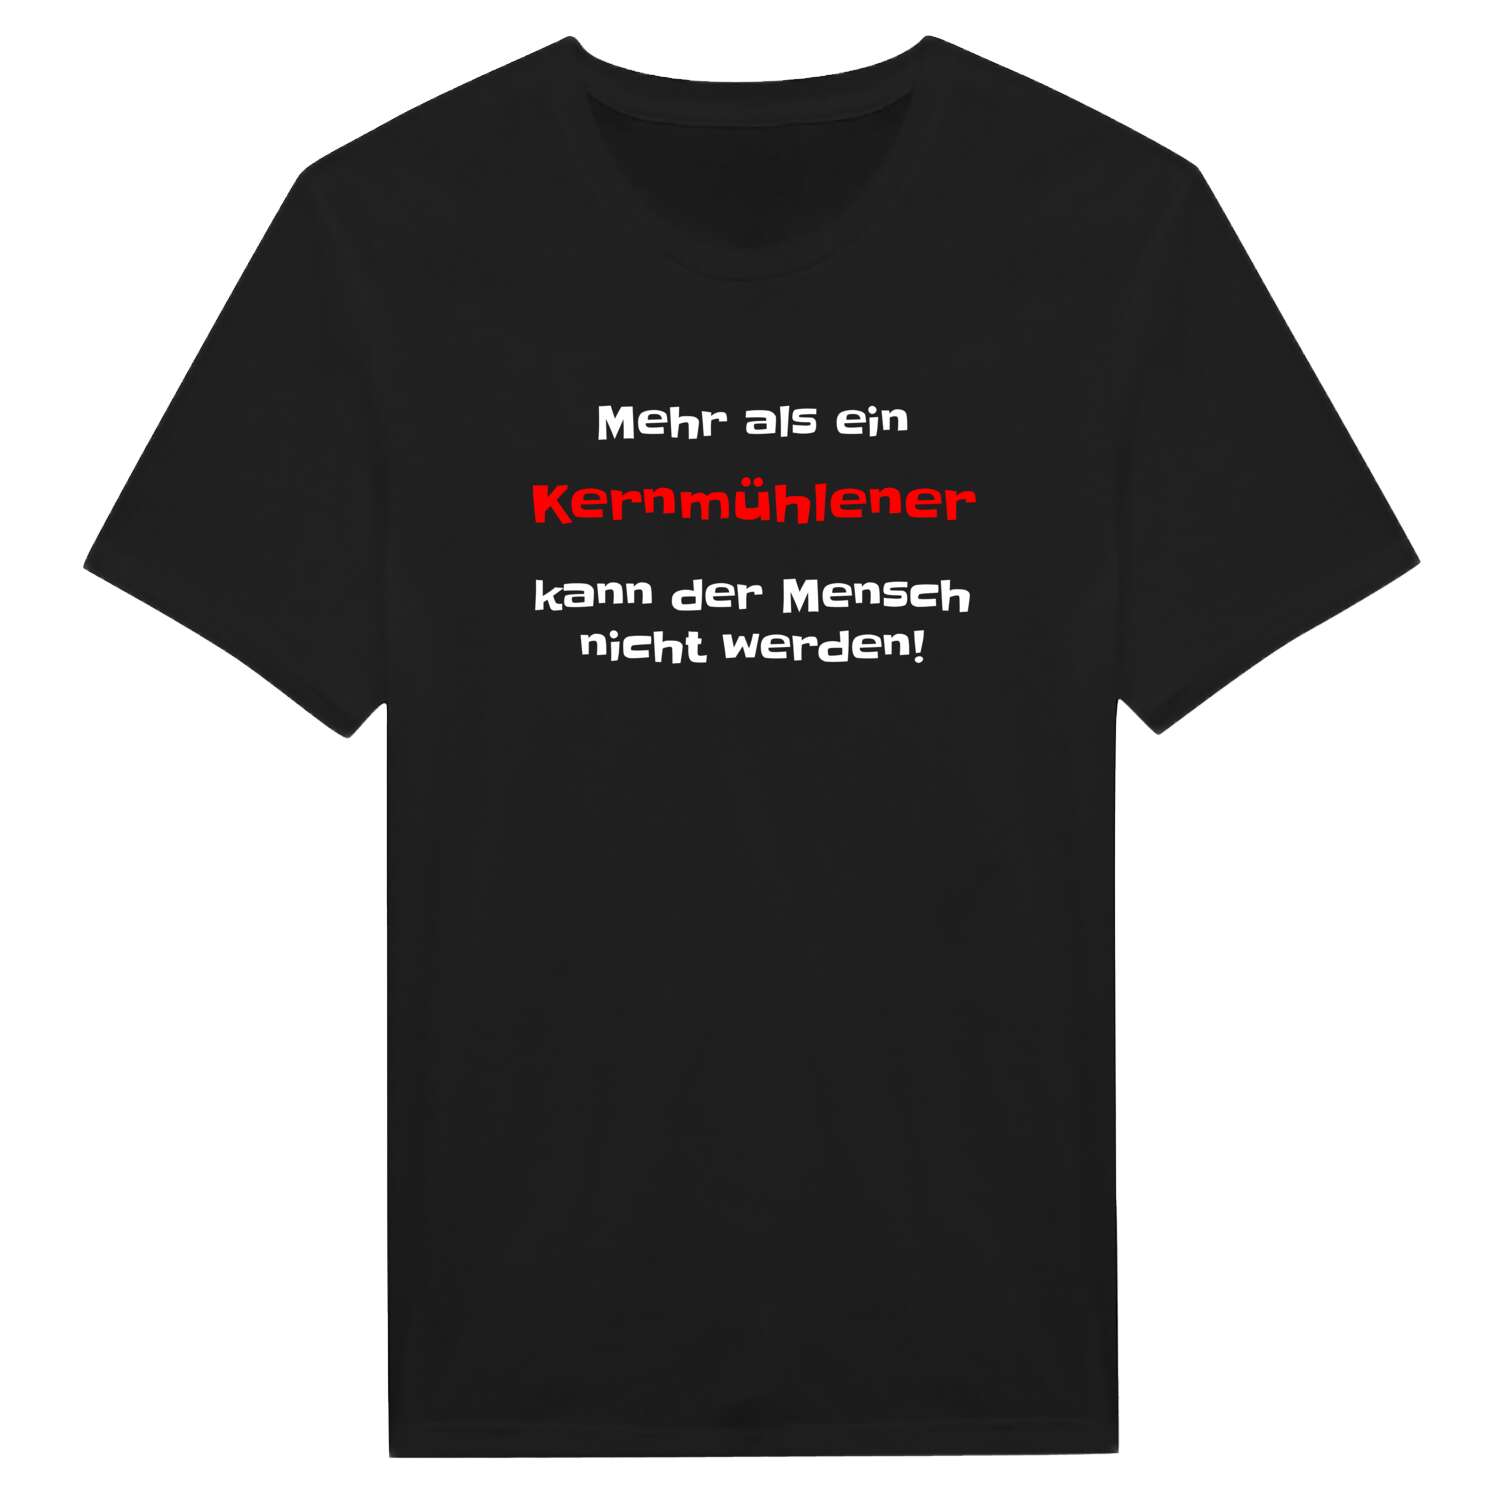 Kernmühle T-Shirt »Mehr als ein«